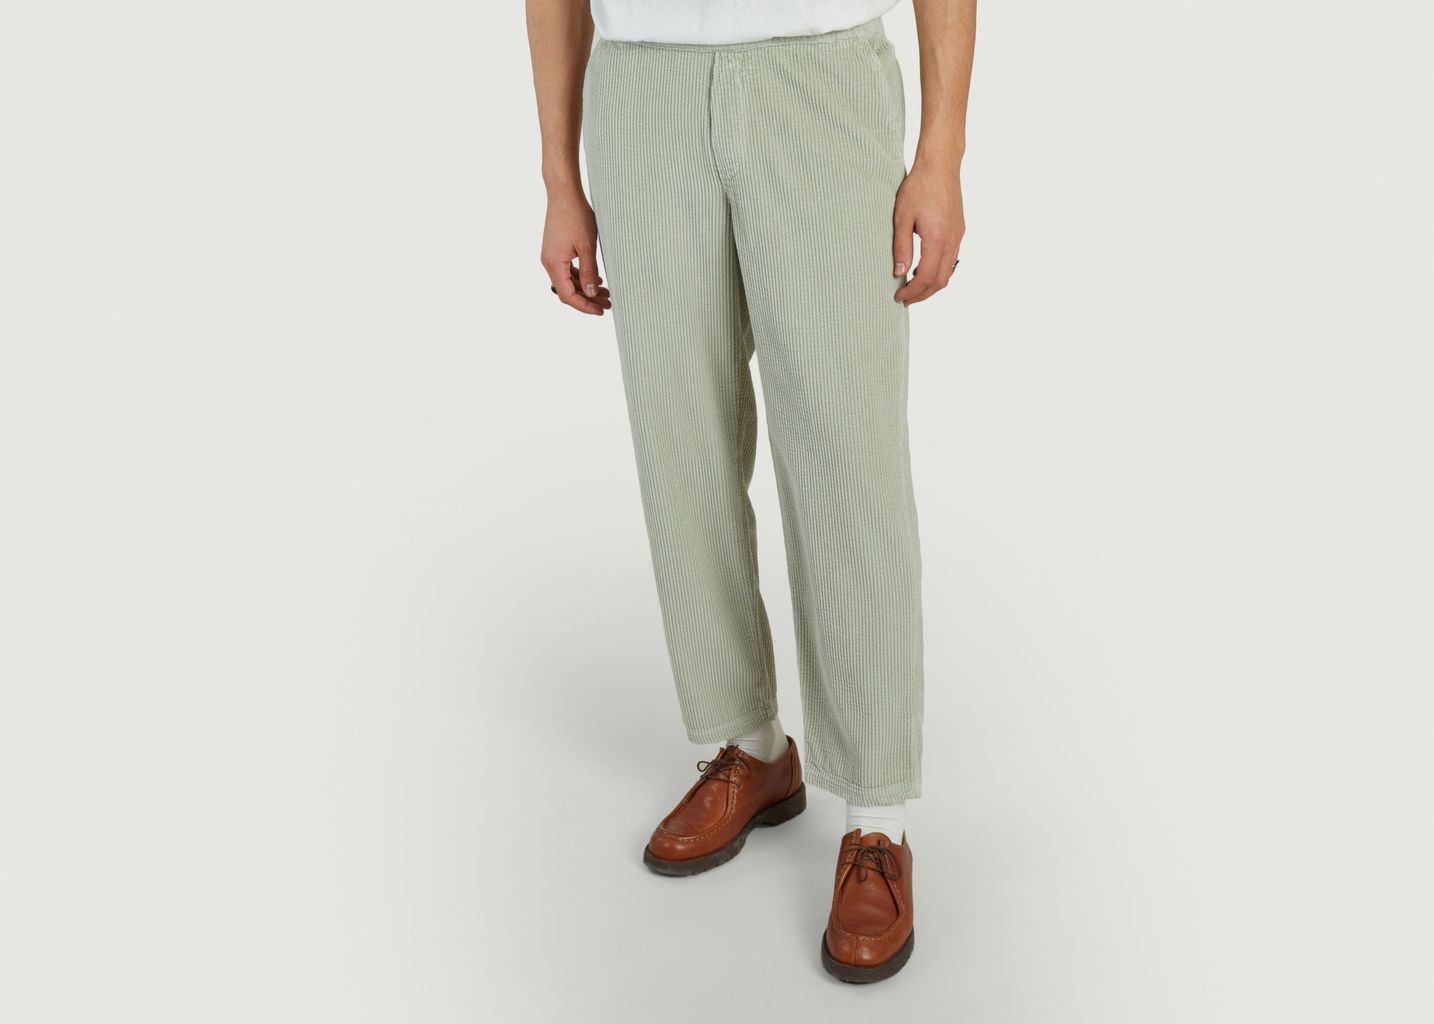 Padow loose-fitting corduroy pants - American Vintage